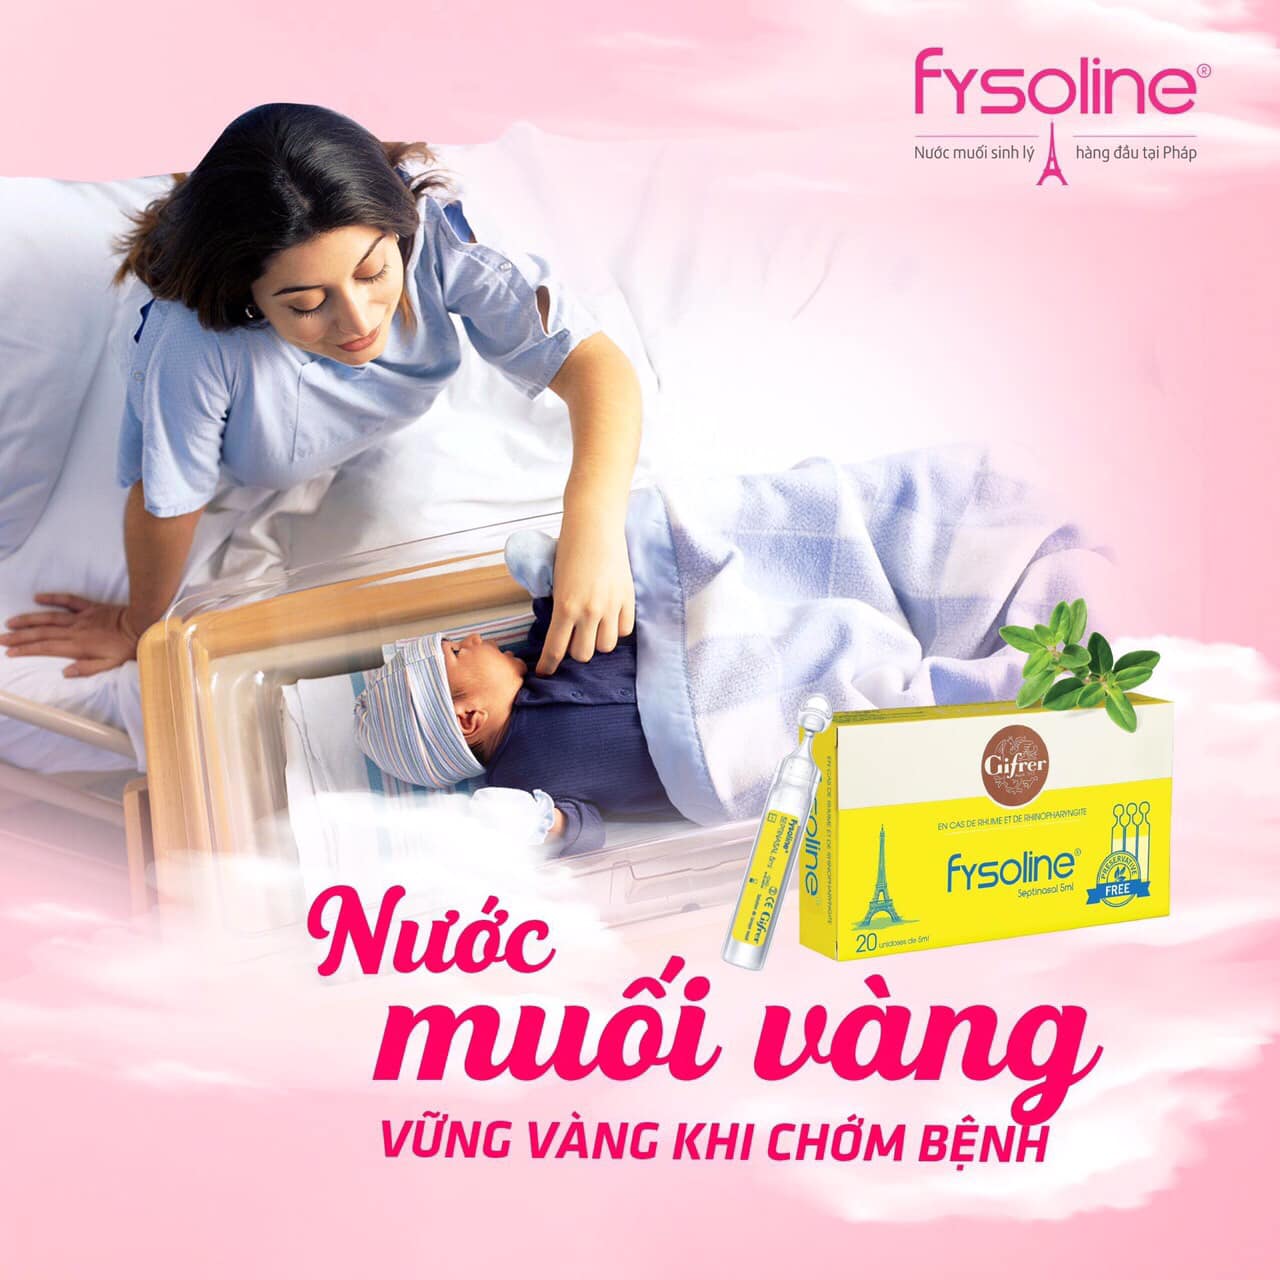 fysoline-vang-nho-mat-duoc-khong-3